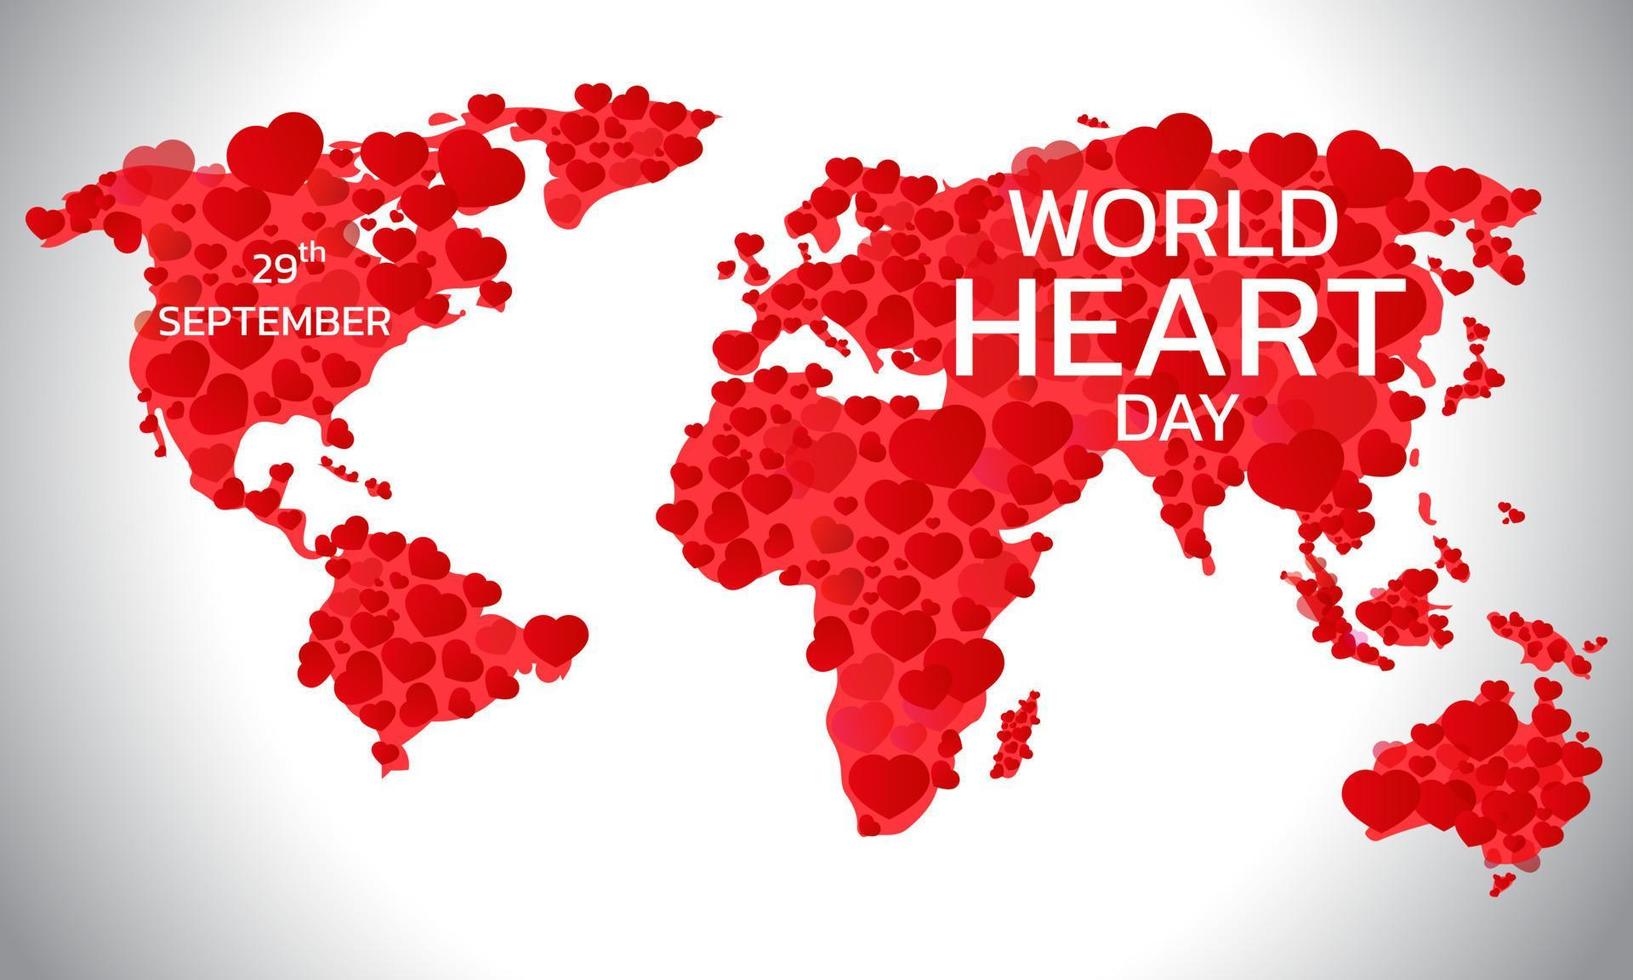 illustration vectorielle, affiche ou bannière pour la journée mondiale du cœur. vecteur